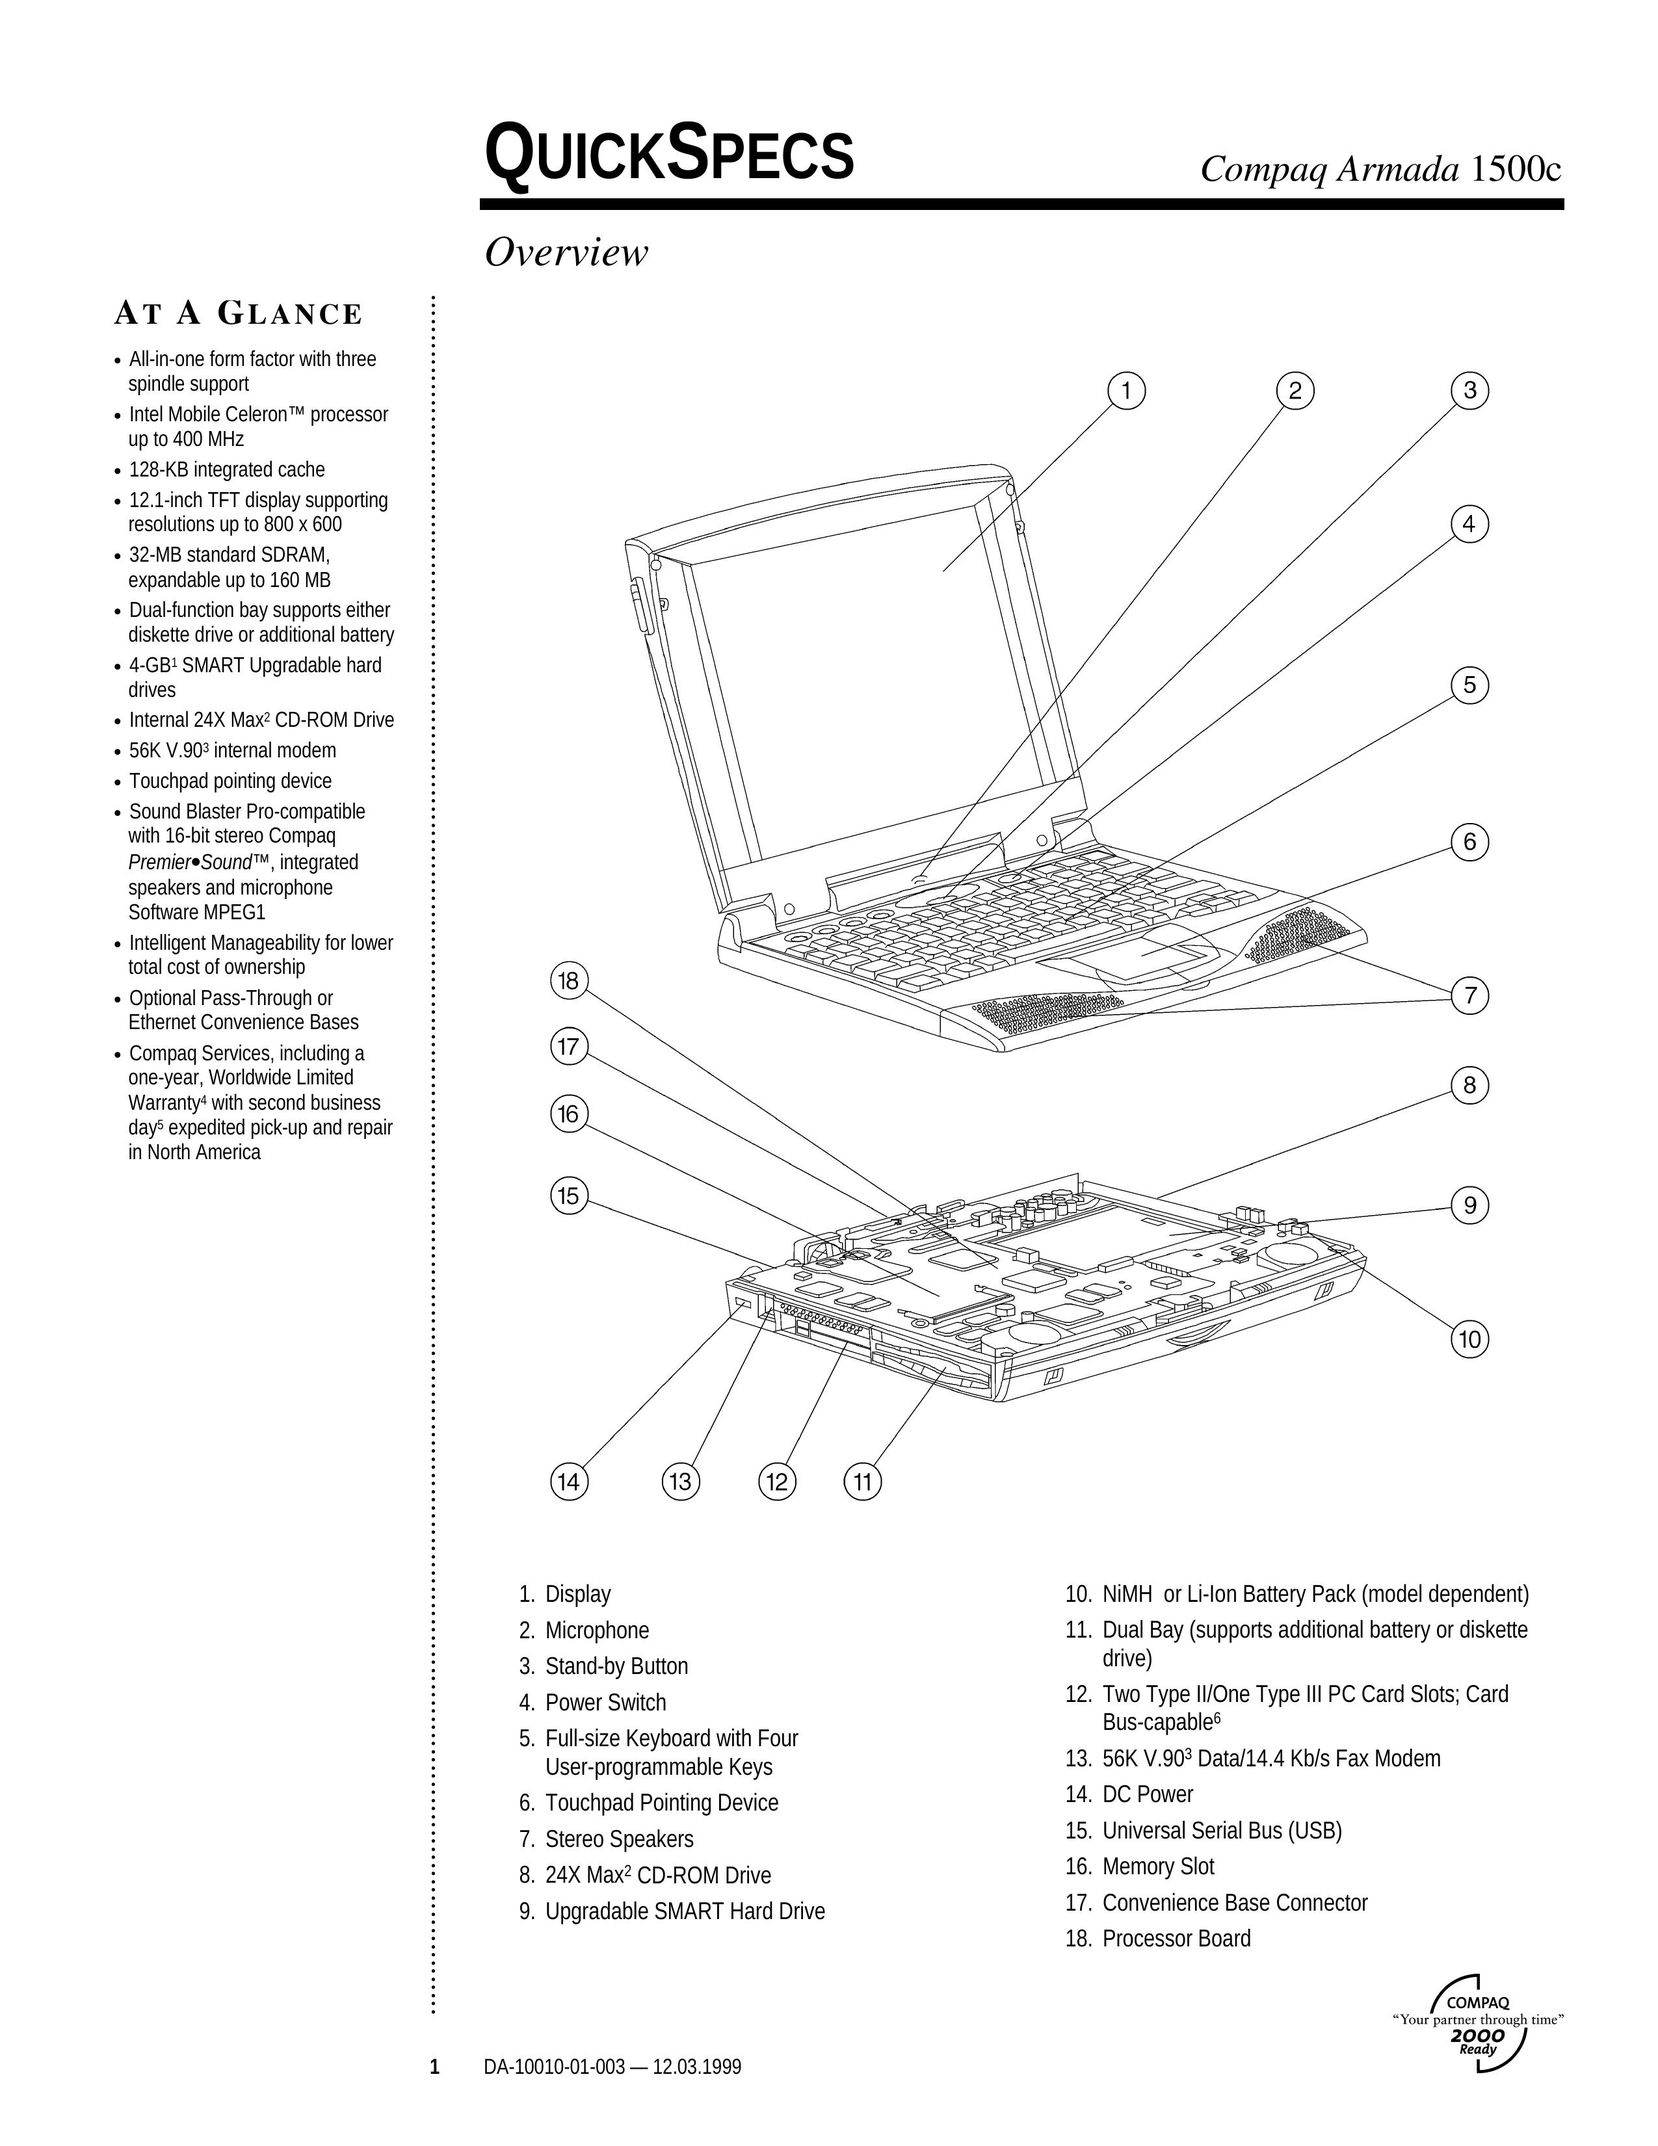 Compaq 1500c Laptop User Manual